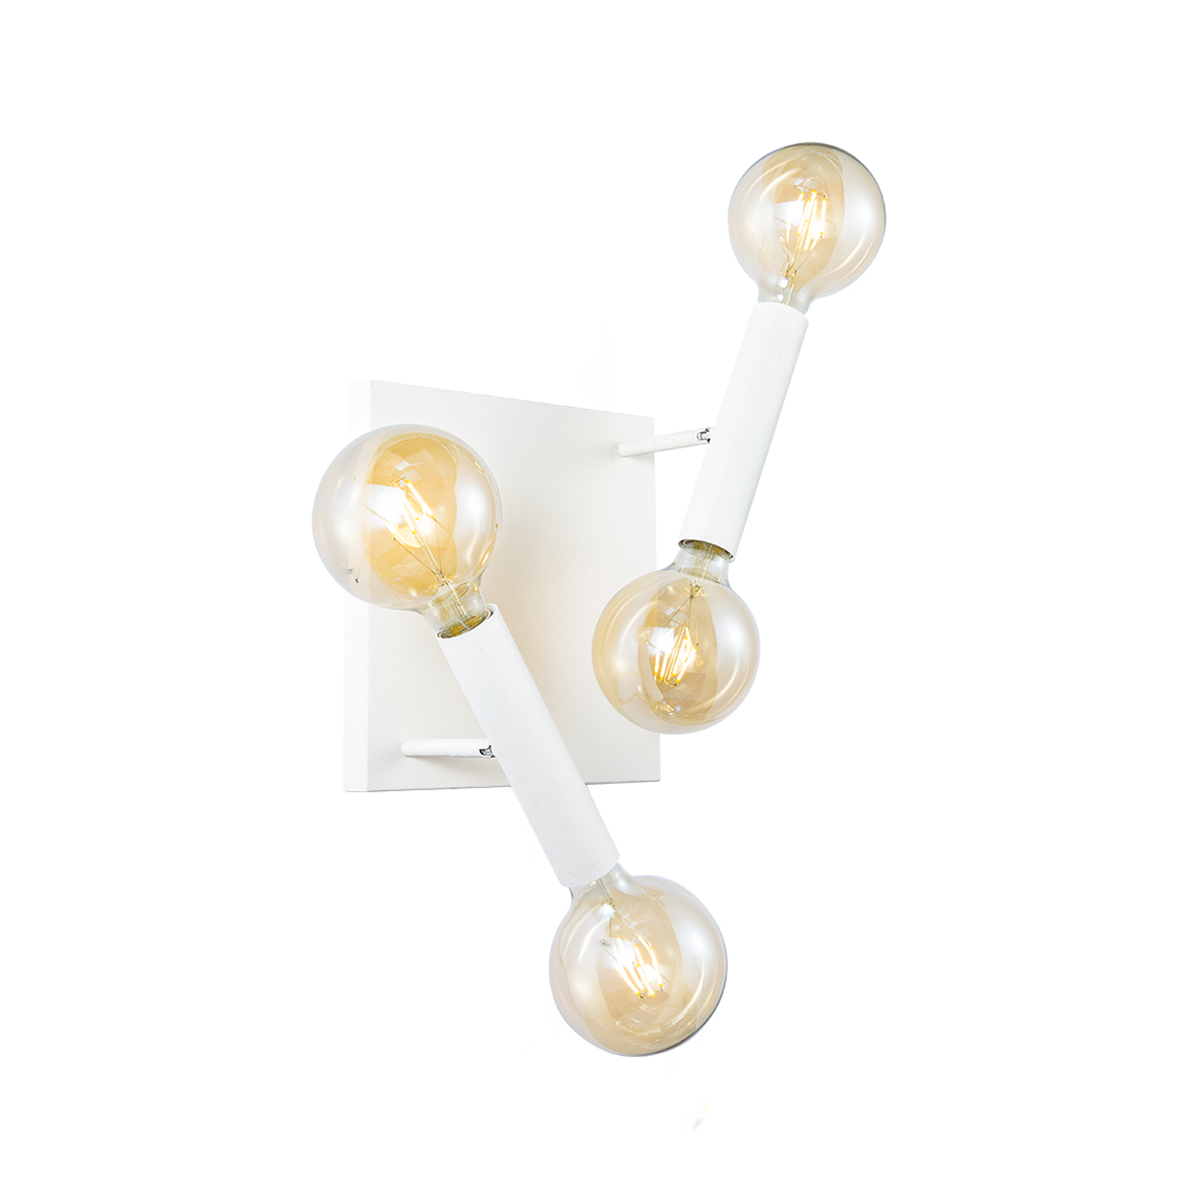 Tangla lighting - TLW5009-04SW - LED wall lamp 4 Lights - metal in sand white - pillar - E27